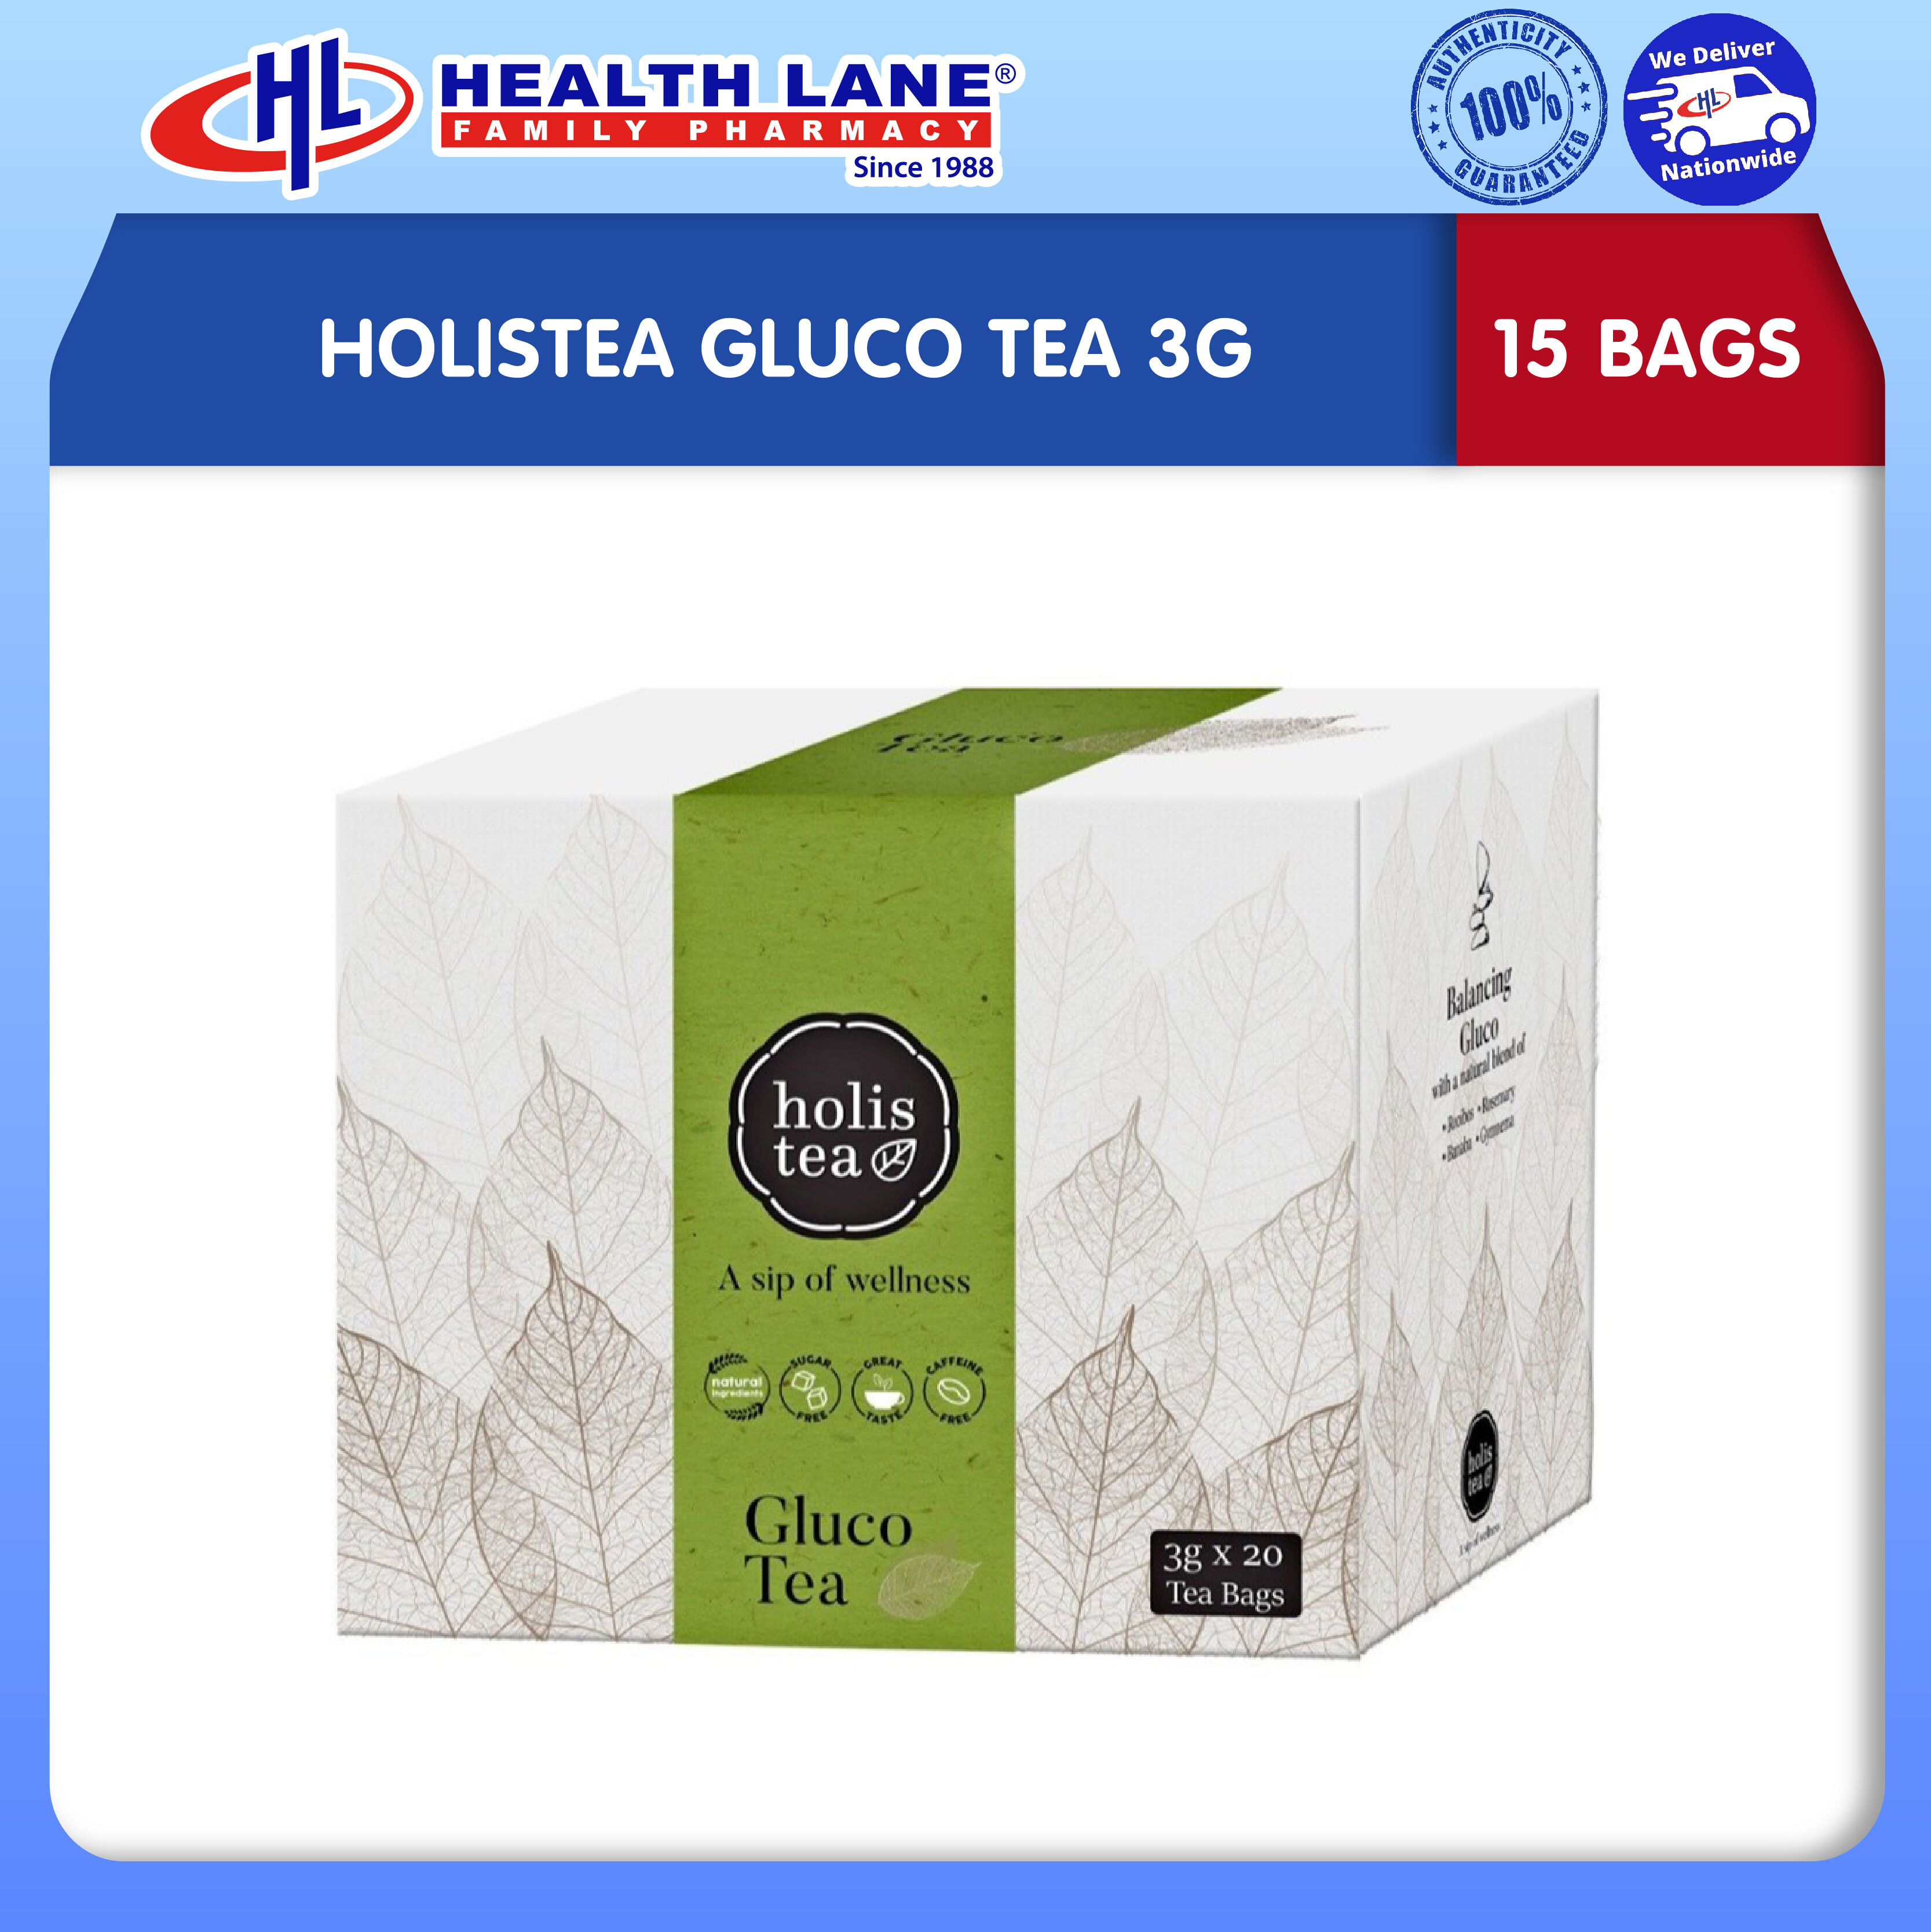 HOLISTEA GLUCO TEA (15 BAGS)